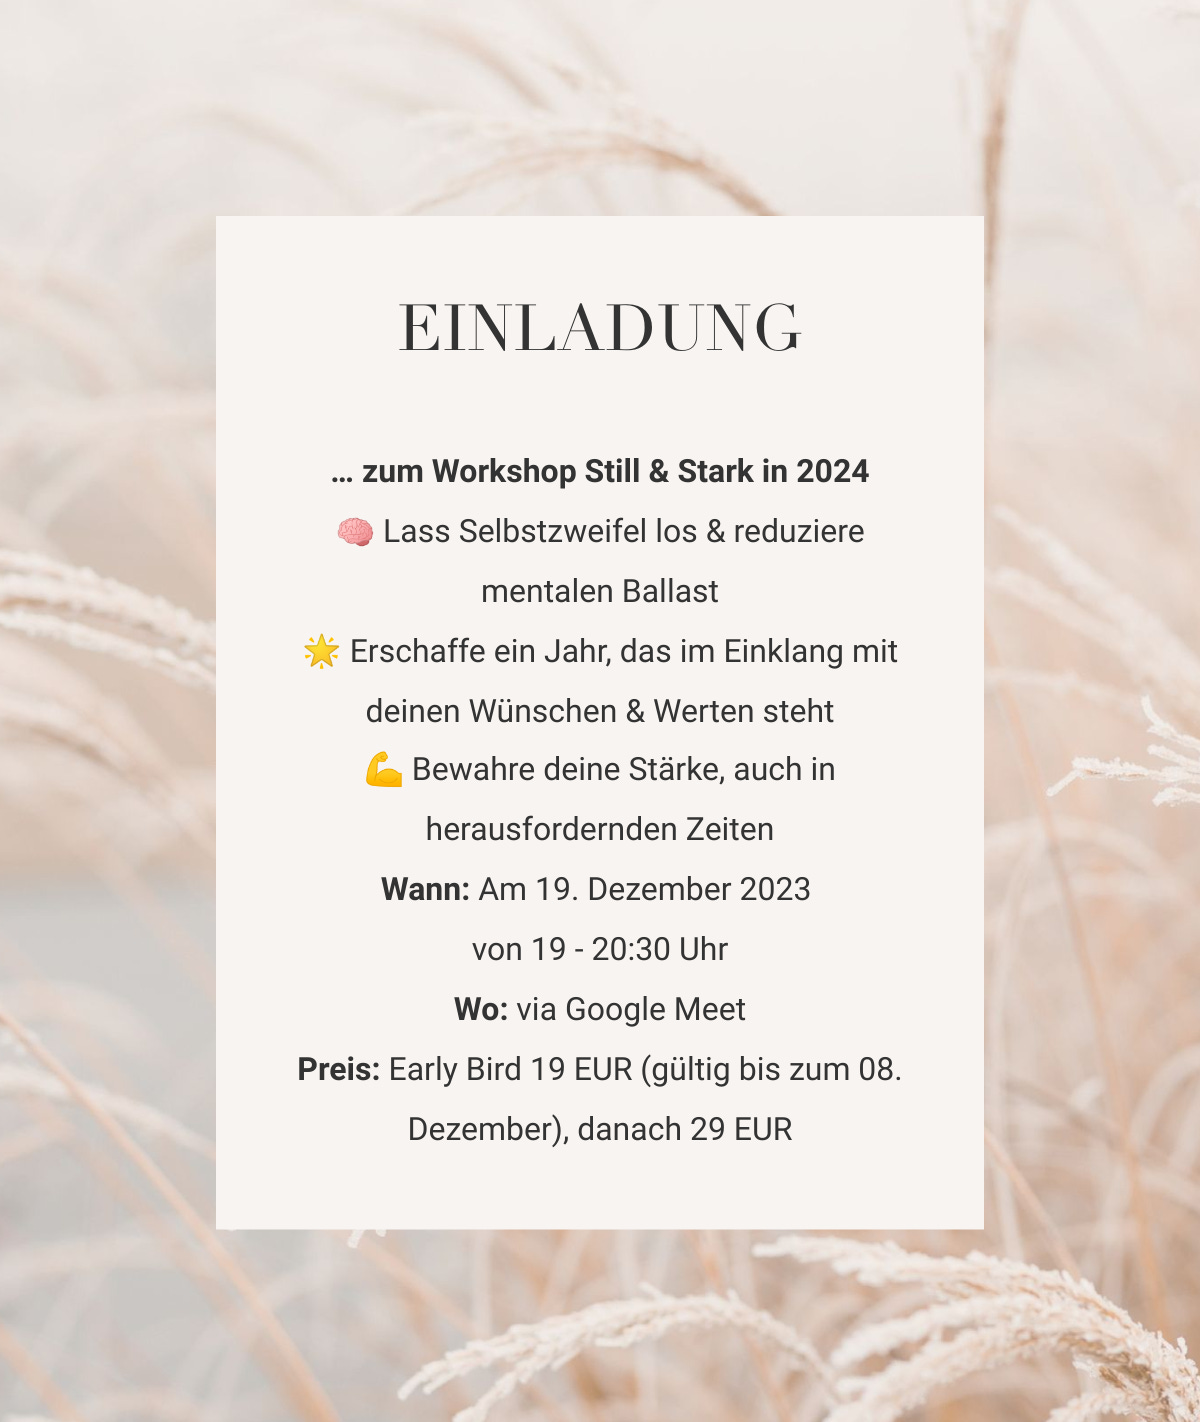 Der Workshop findet am 19.12. von 19 bis 20.30 Uhr bei Google Meet statt und kostet 19 Euro, ab 9. Dezember 29 Euro.